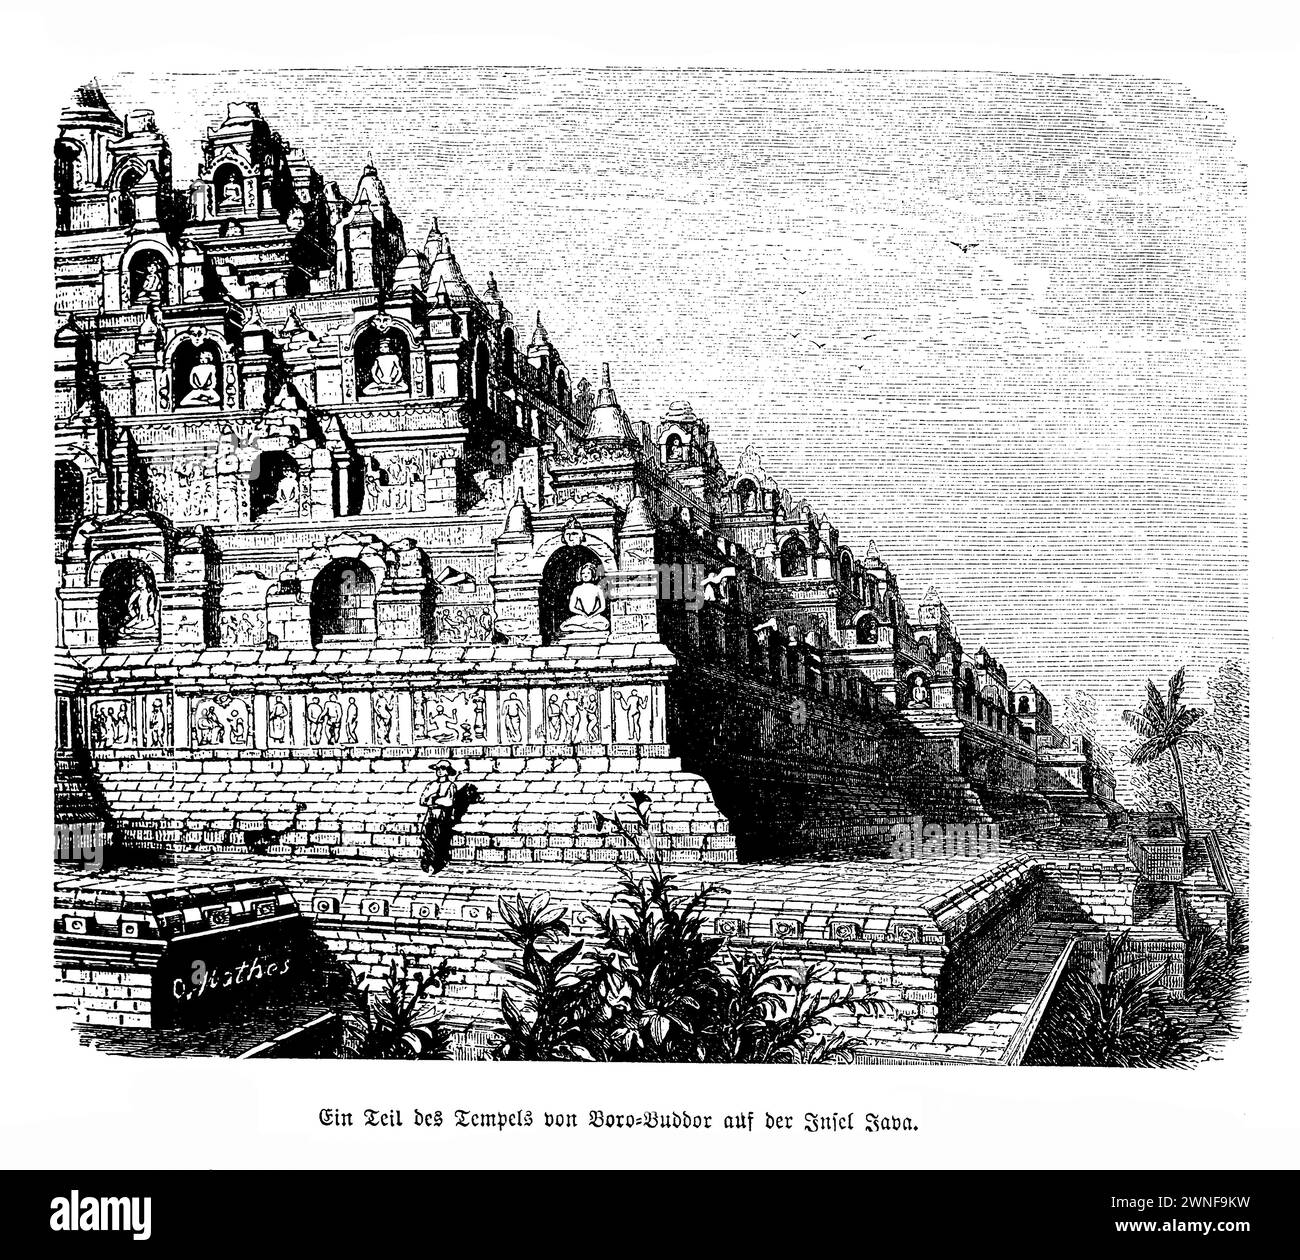 Borobudur temple Java. S'élevant majestueusement sur les plaines luxuriantes de Java, en Indonésie, le temple Borobudur est un témoignage monumental de l'art et de l'architecture bouddhistes. Construit au IXe siècle sous la dynastie Sailendra, cette grande structure est le plus grand temple bouddhiste du monde, avec un labyrinthe complexe de stupas, statues et panneaux en relief qui racontent la vie de Bouddha et les principes du bouddhisme. Le dessin de Borobudur, ressemblant à une montagne cosmique, est une représentation symbolique de la cosmologie bouddhiste Banque D'Images